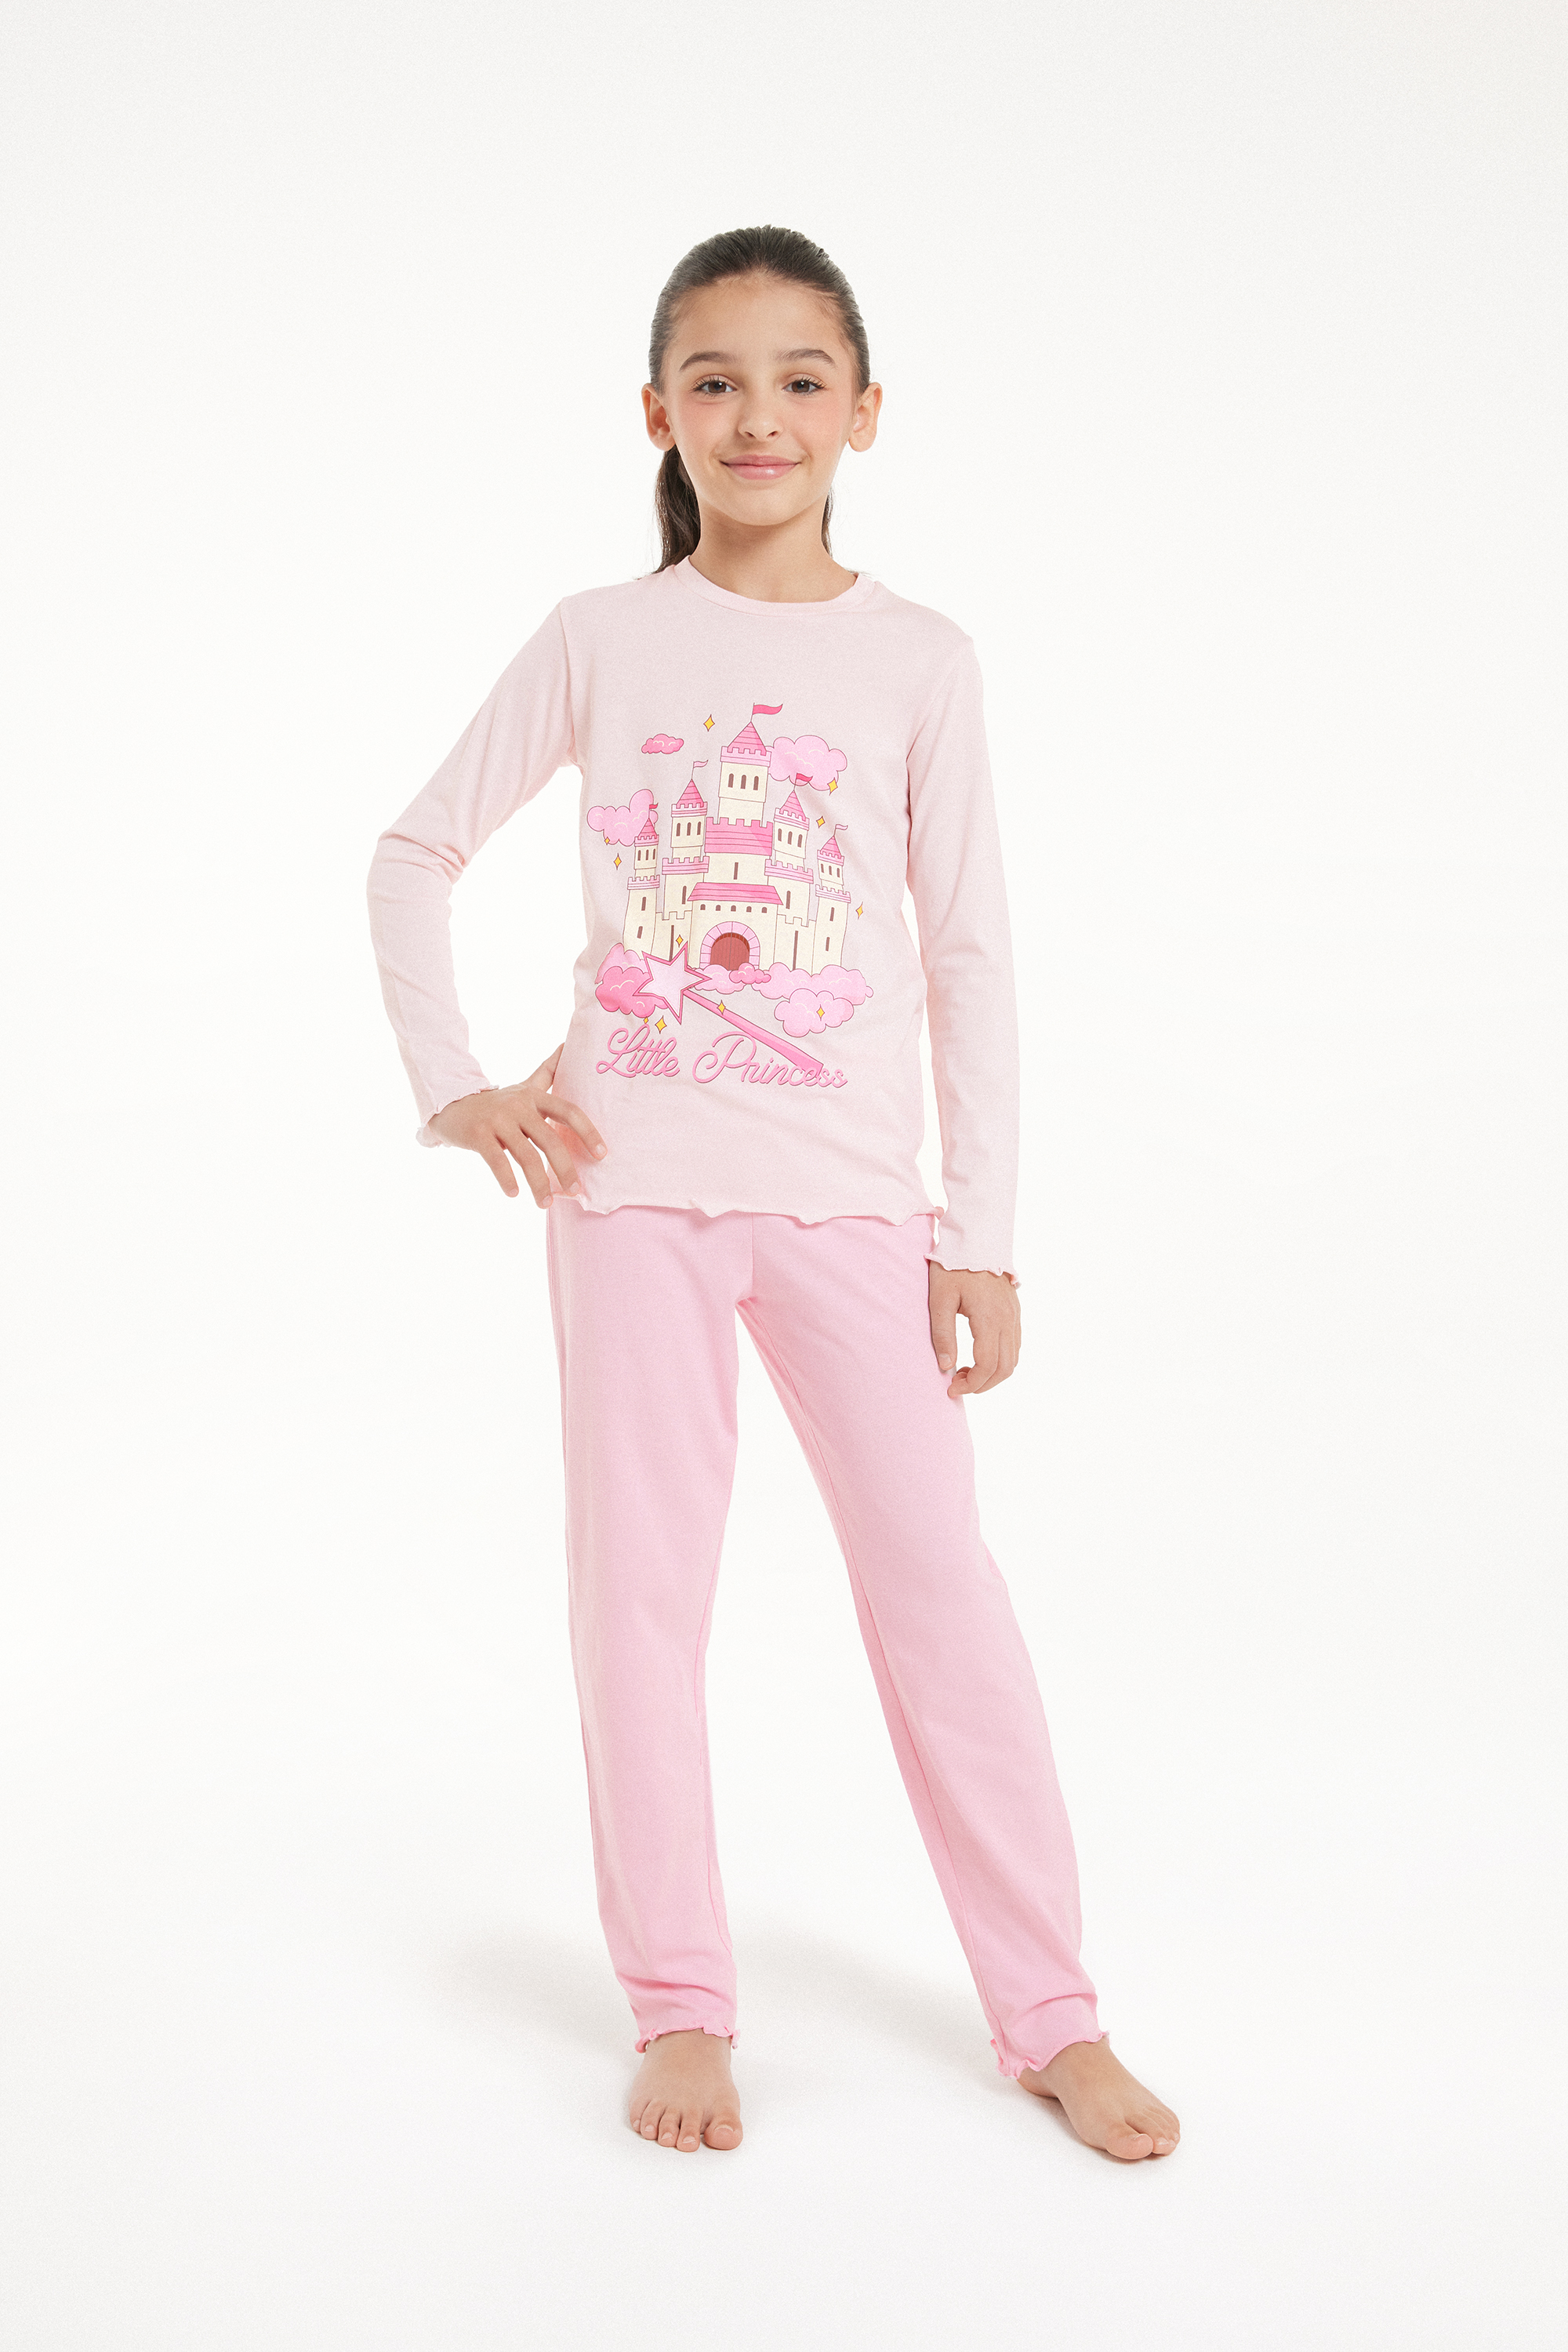 Langer Pyjama aus Baumwolle mit „Little Princess“-Print